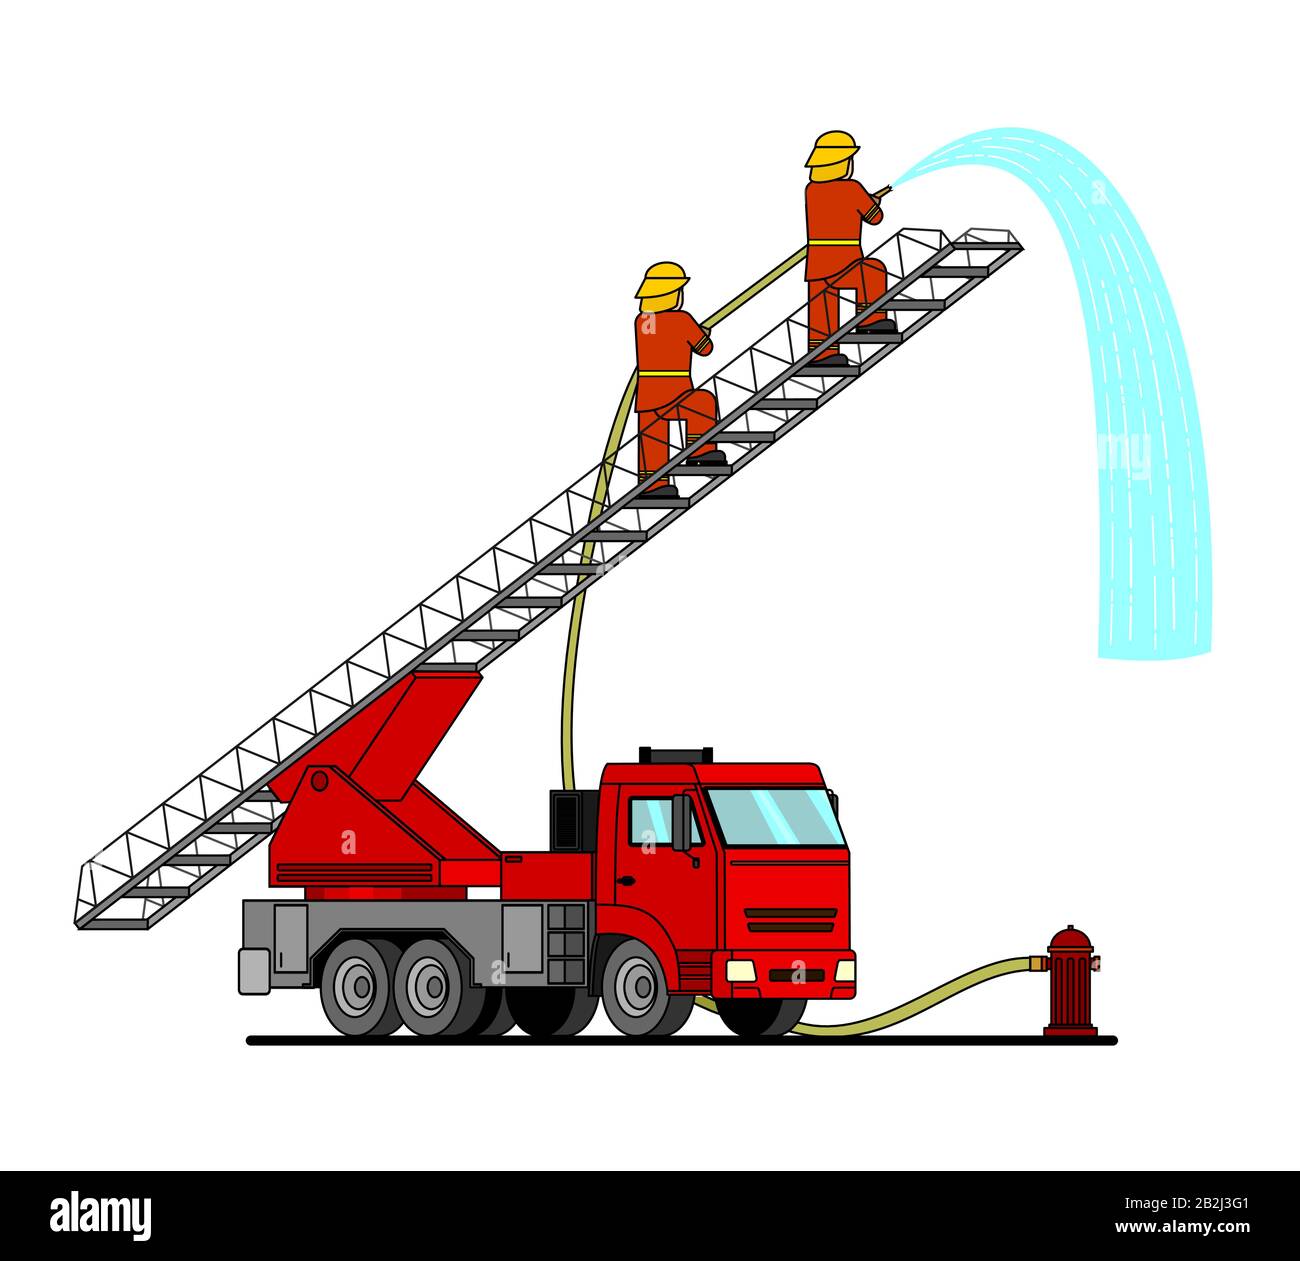 Cartoon-Feuerwehrwagen mit einer Autoleiter. Feuerwehrleute stehen auf der Treppe und gießen etwas von einem Feuerwehrschlauch. Flache Vektordarstellung eines Wasserengins Stock Vektor